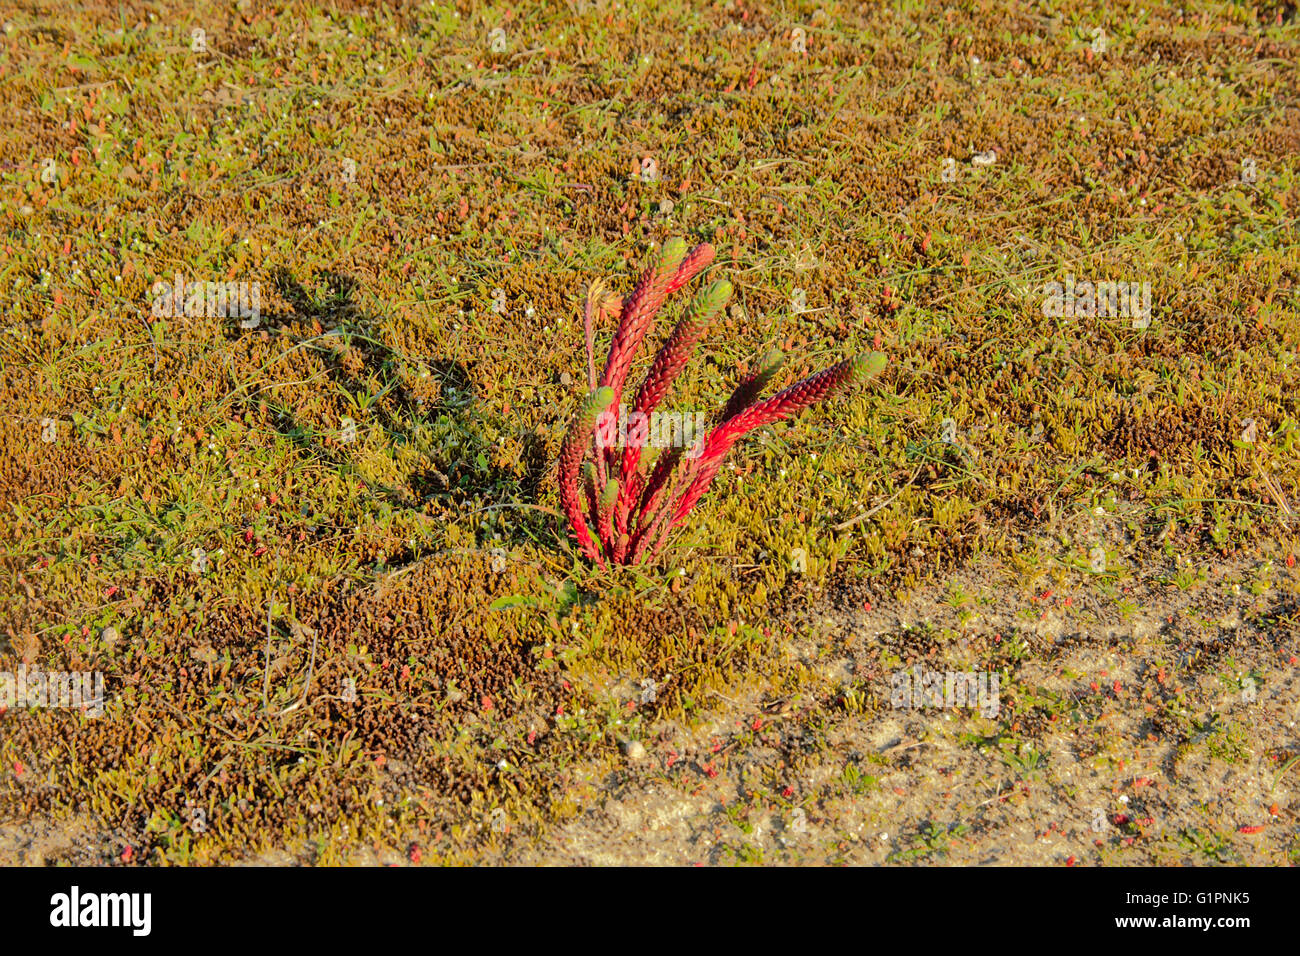 Queller Werk in Salz-März (Salicornia) Stockfoto